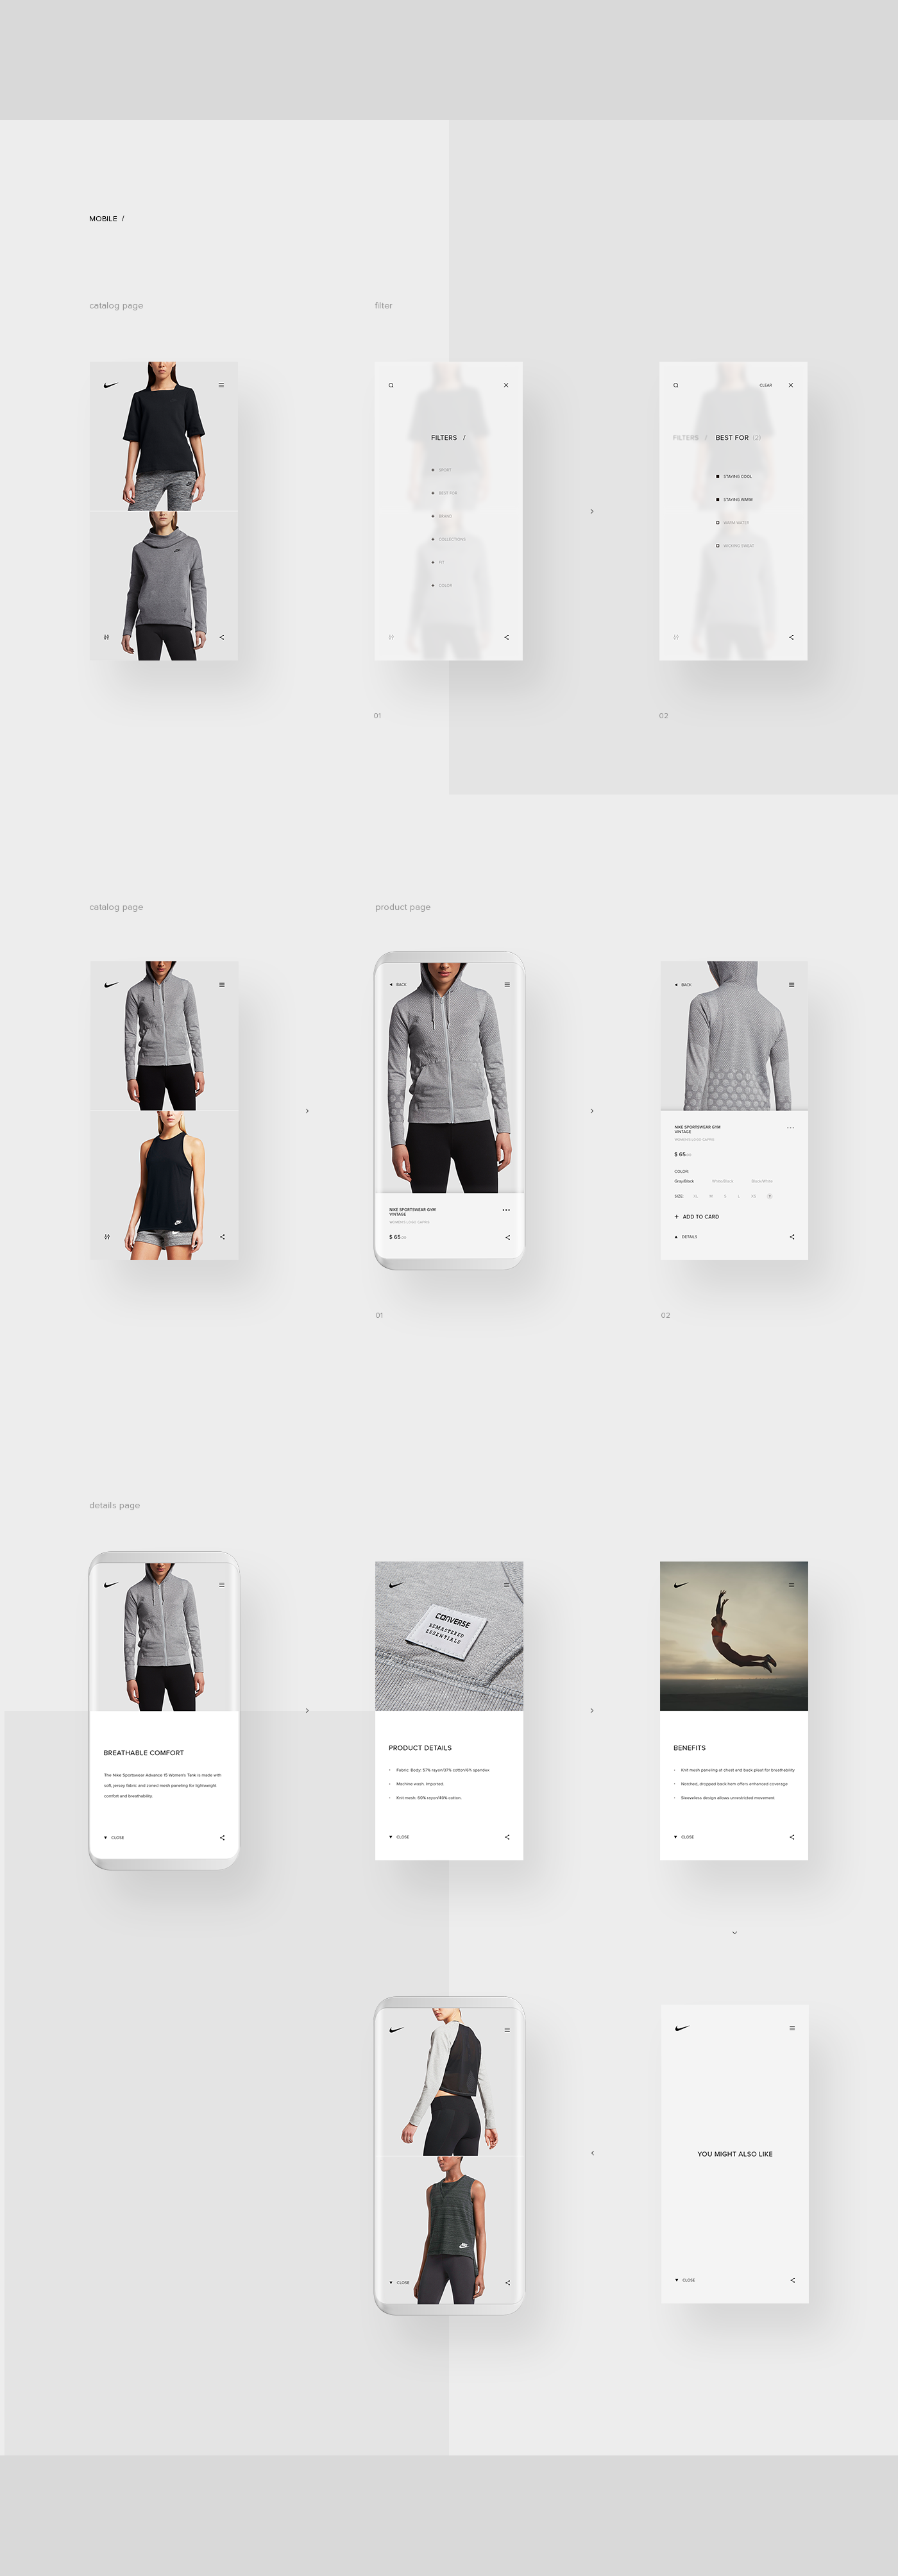 Web UI ux grid Nike store animation  Layout interaction Webdesign